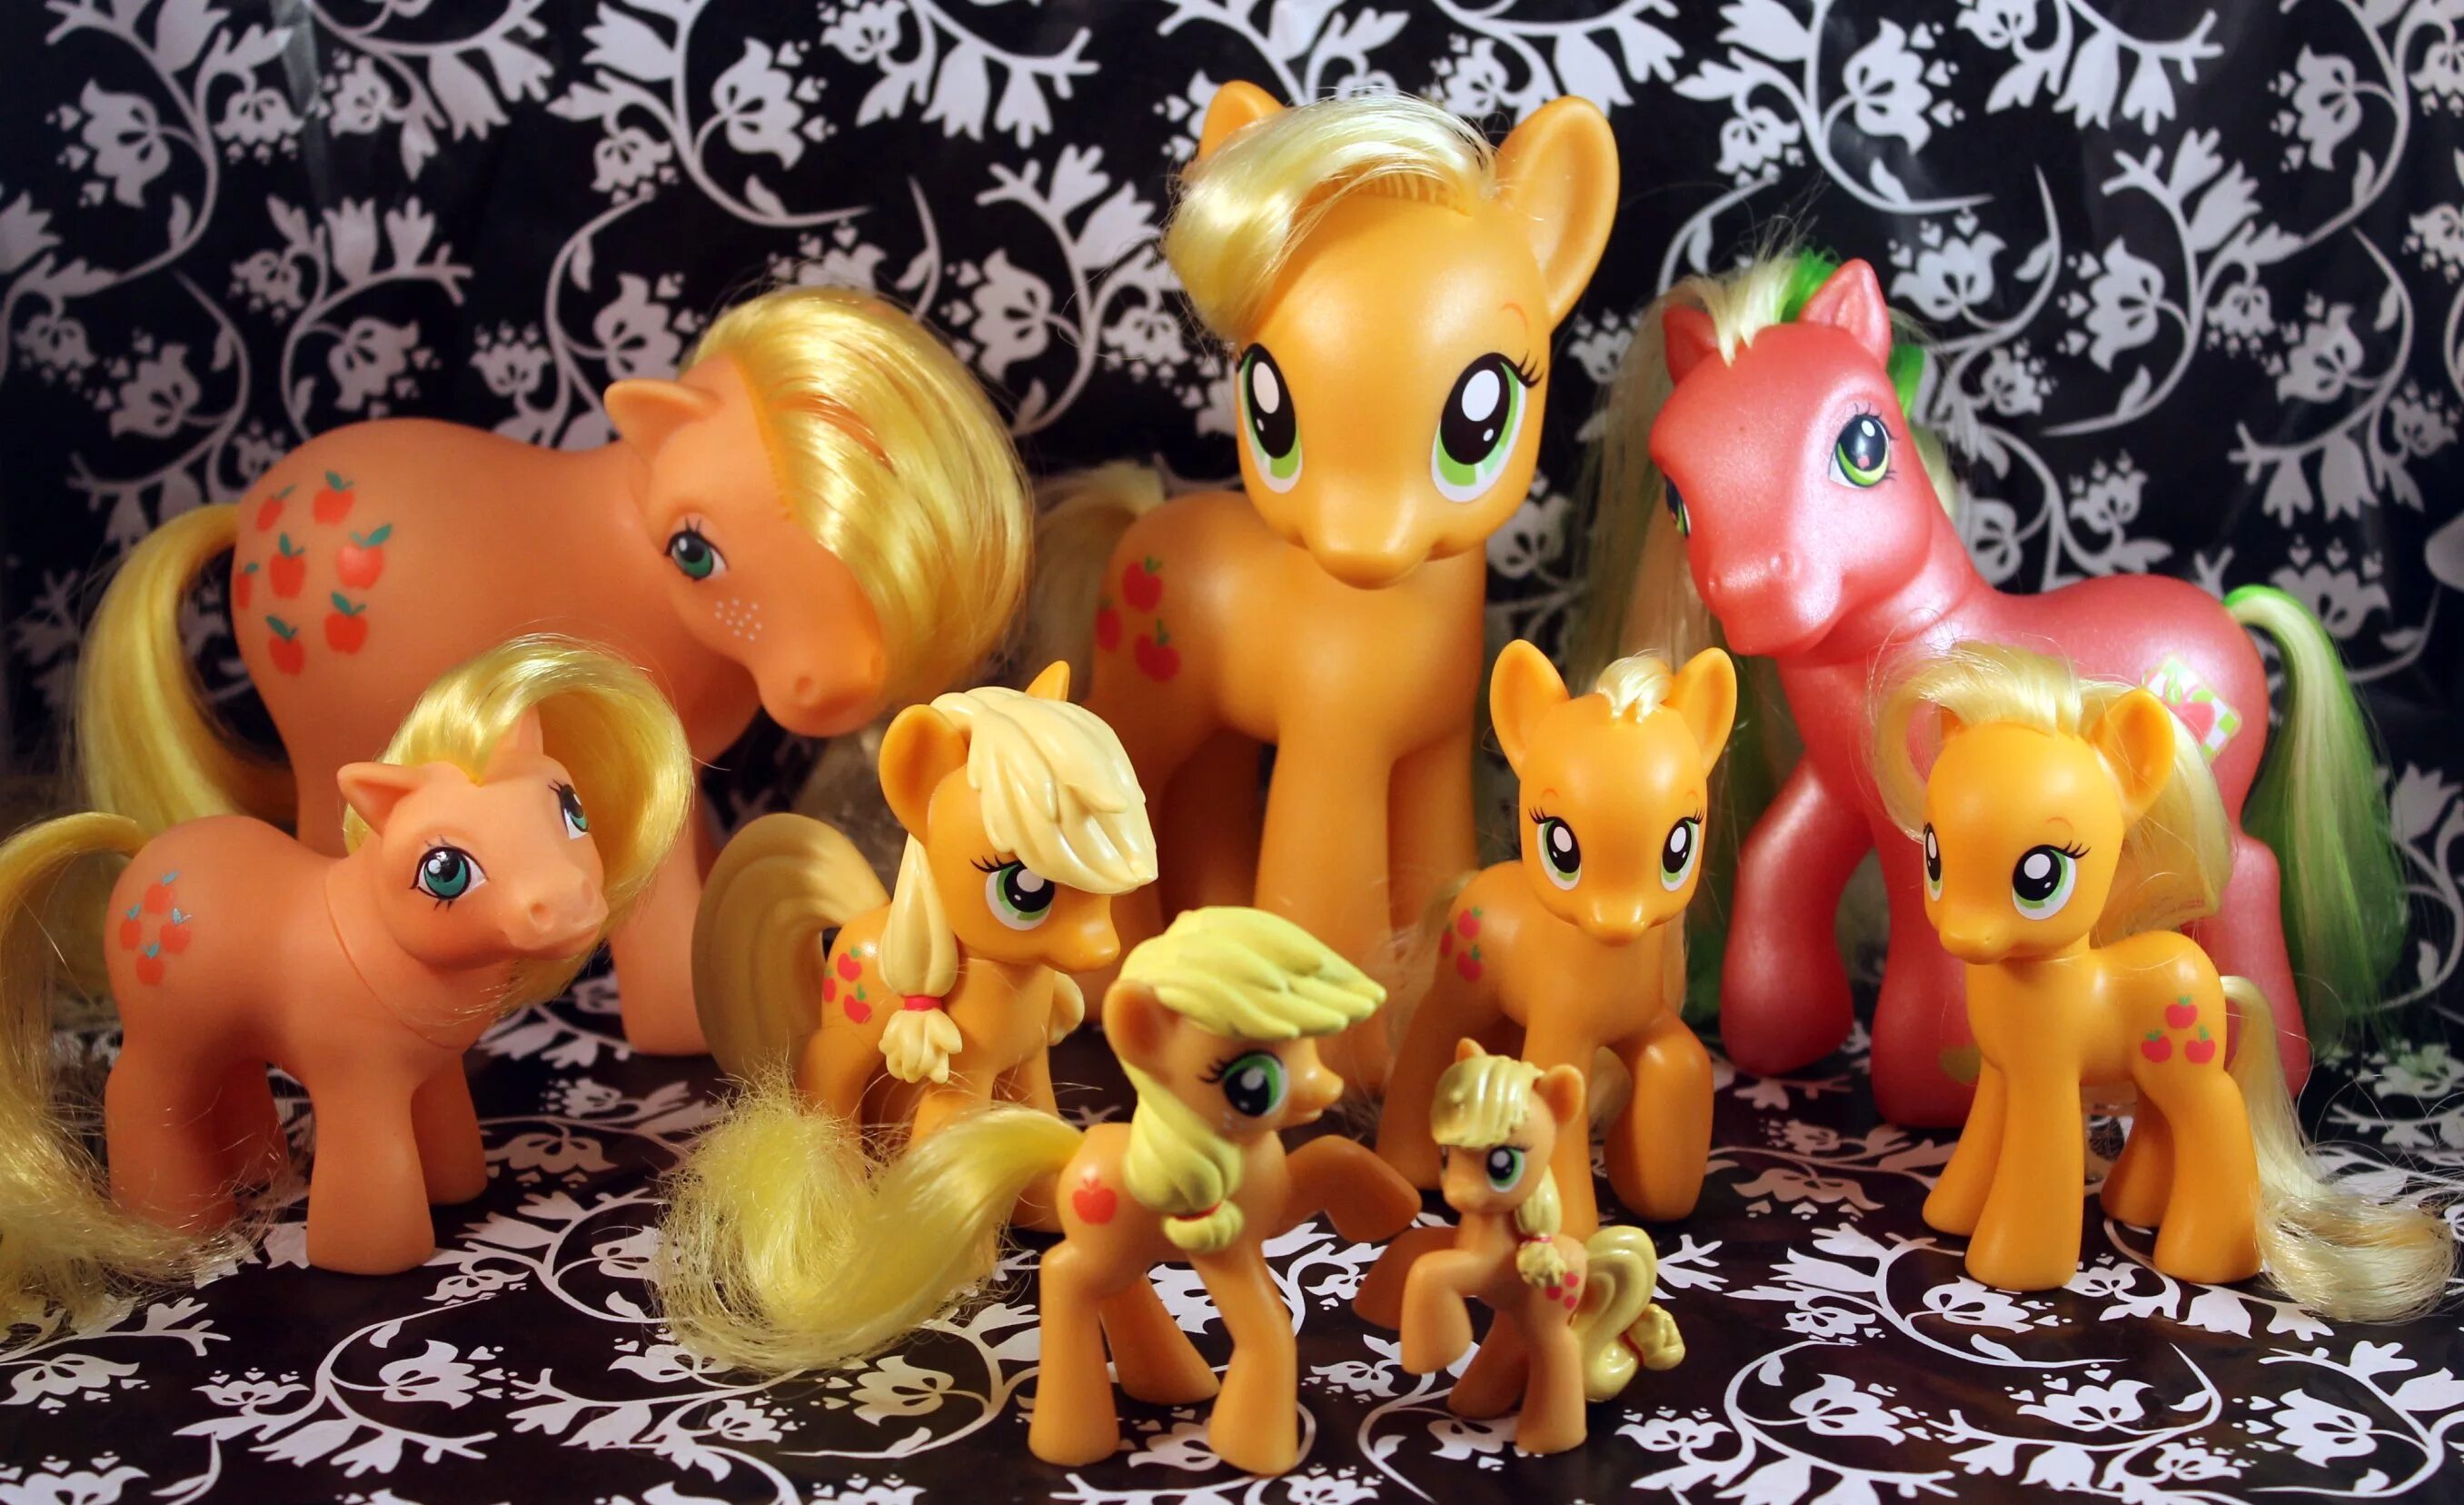 My little Pony игрушки Эпплджек. Пони 5 поколение Эпплджек. Эпплджек игрушка пони Hasbro 2010. My little Pony 1 поколение игрушки.